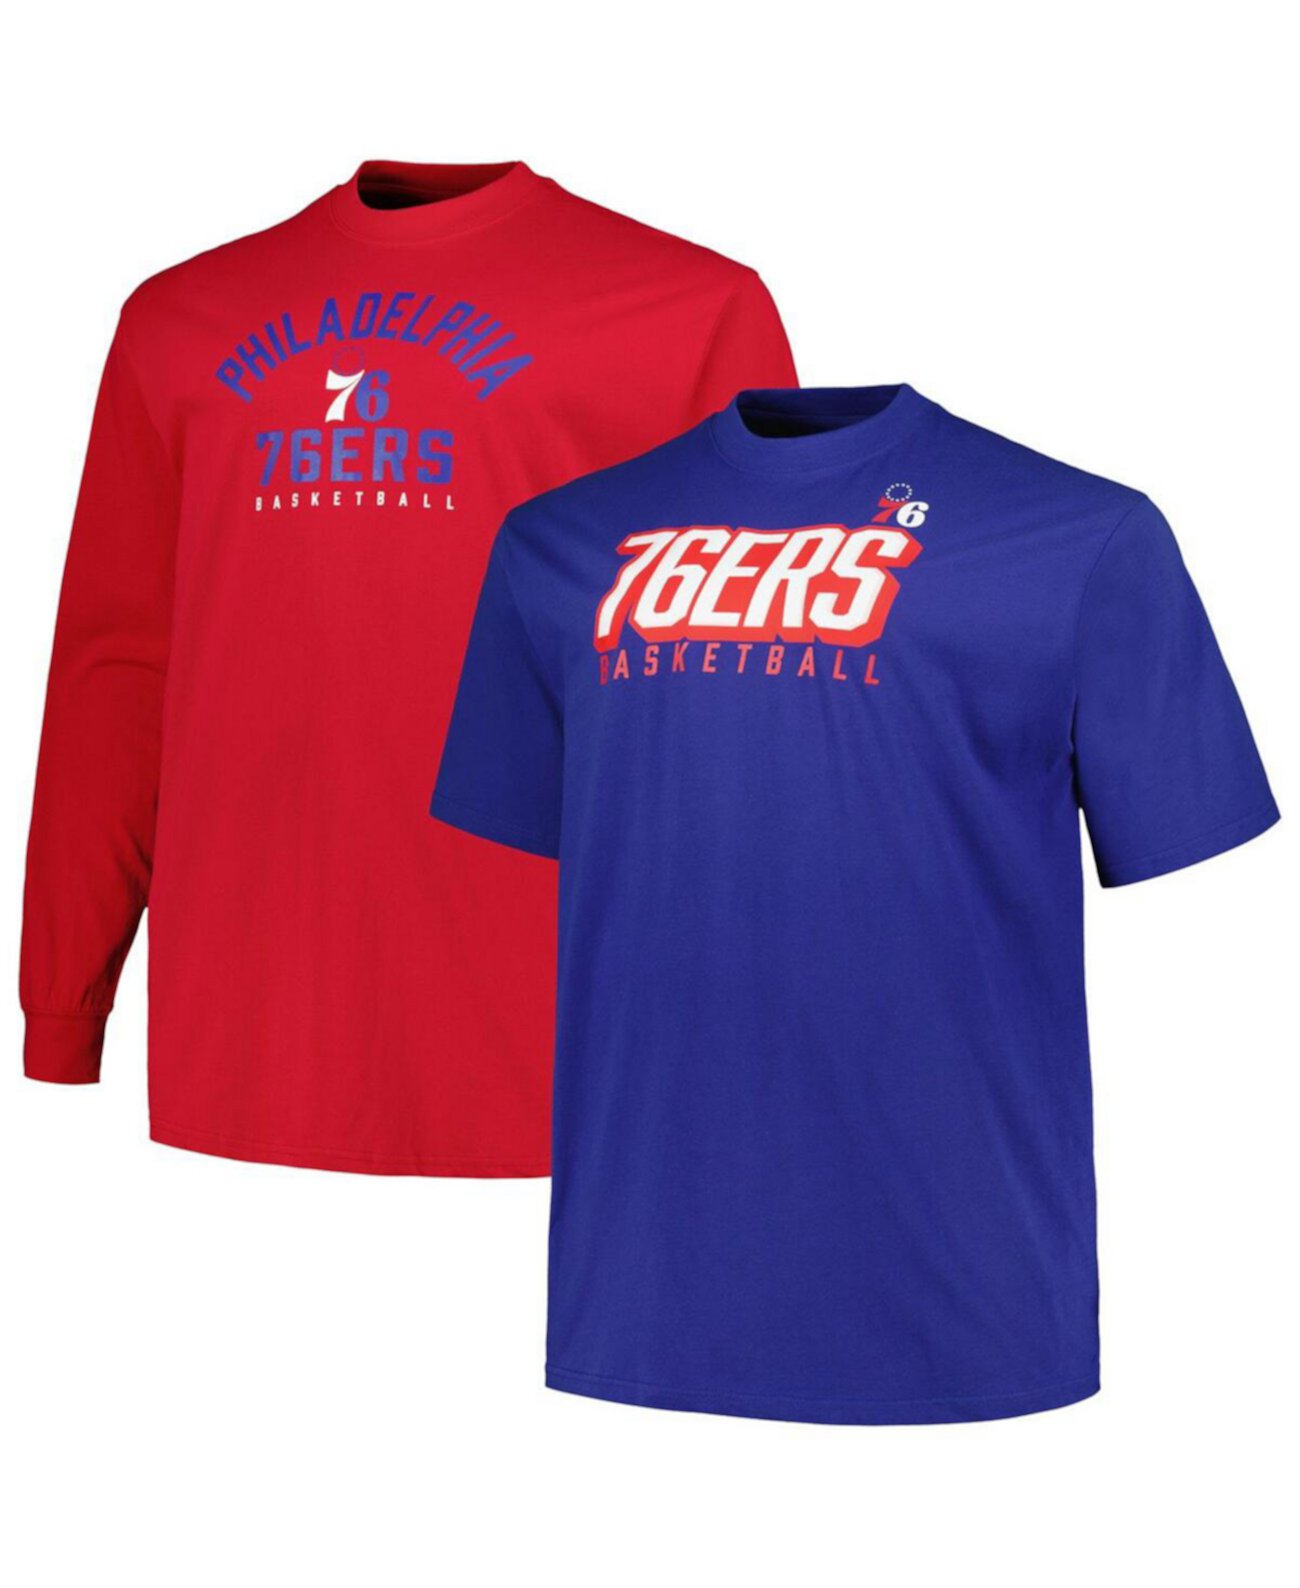 Мужской комплект футболок с короткими и длинными рукавами Royal, красный Philadelphia 76ers Big and Tall Fanatics